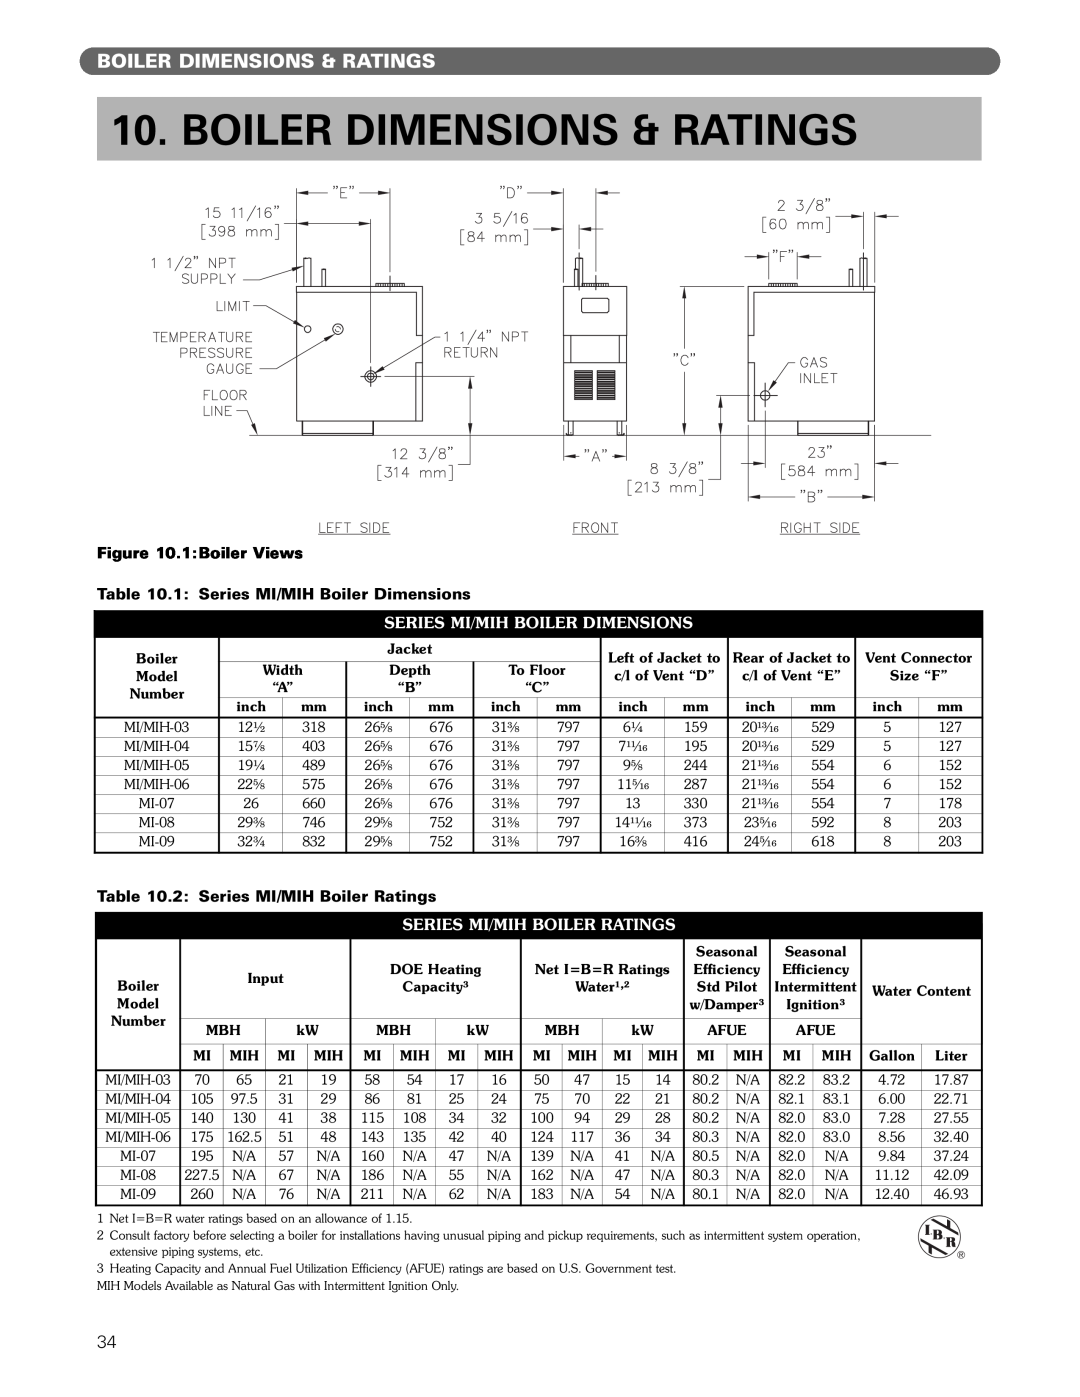 PB Heat MI/MIH series manual Boiler Dimensions & Ratings, Series Mi/Mih Boiler Dimensions, Series Mi/Mih Boiler Ratings 